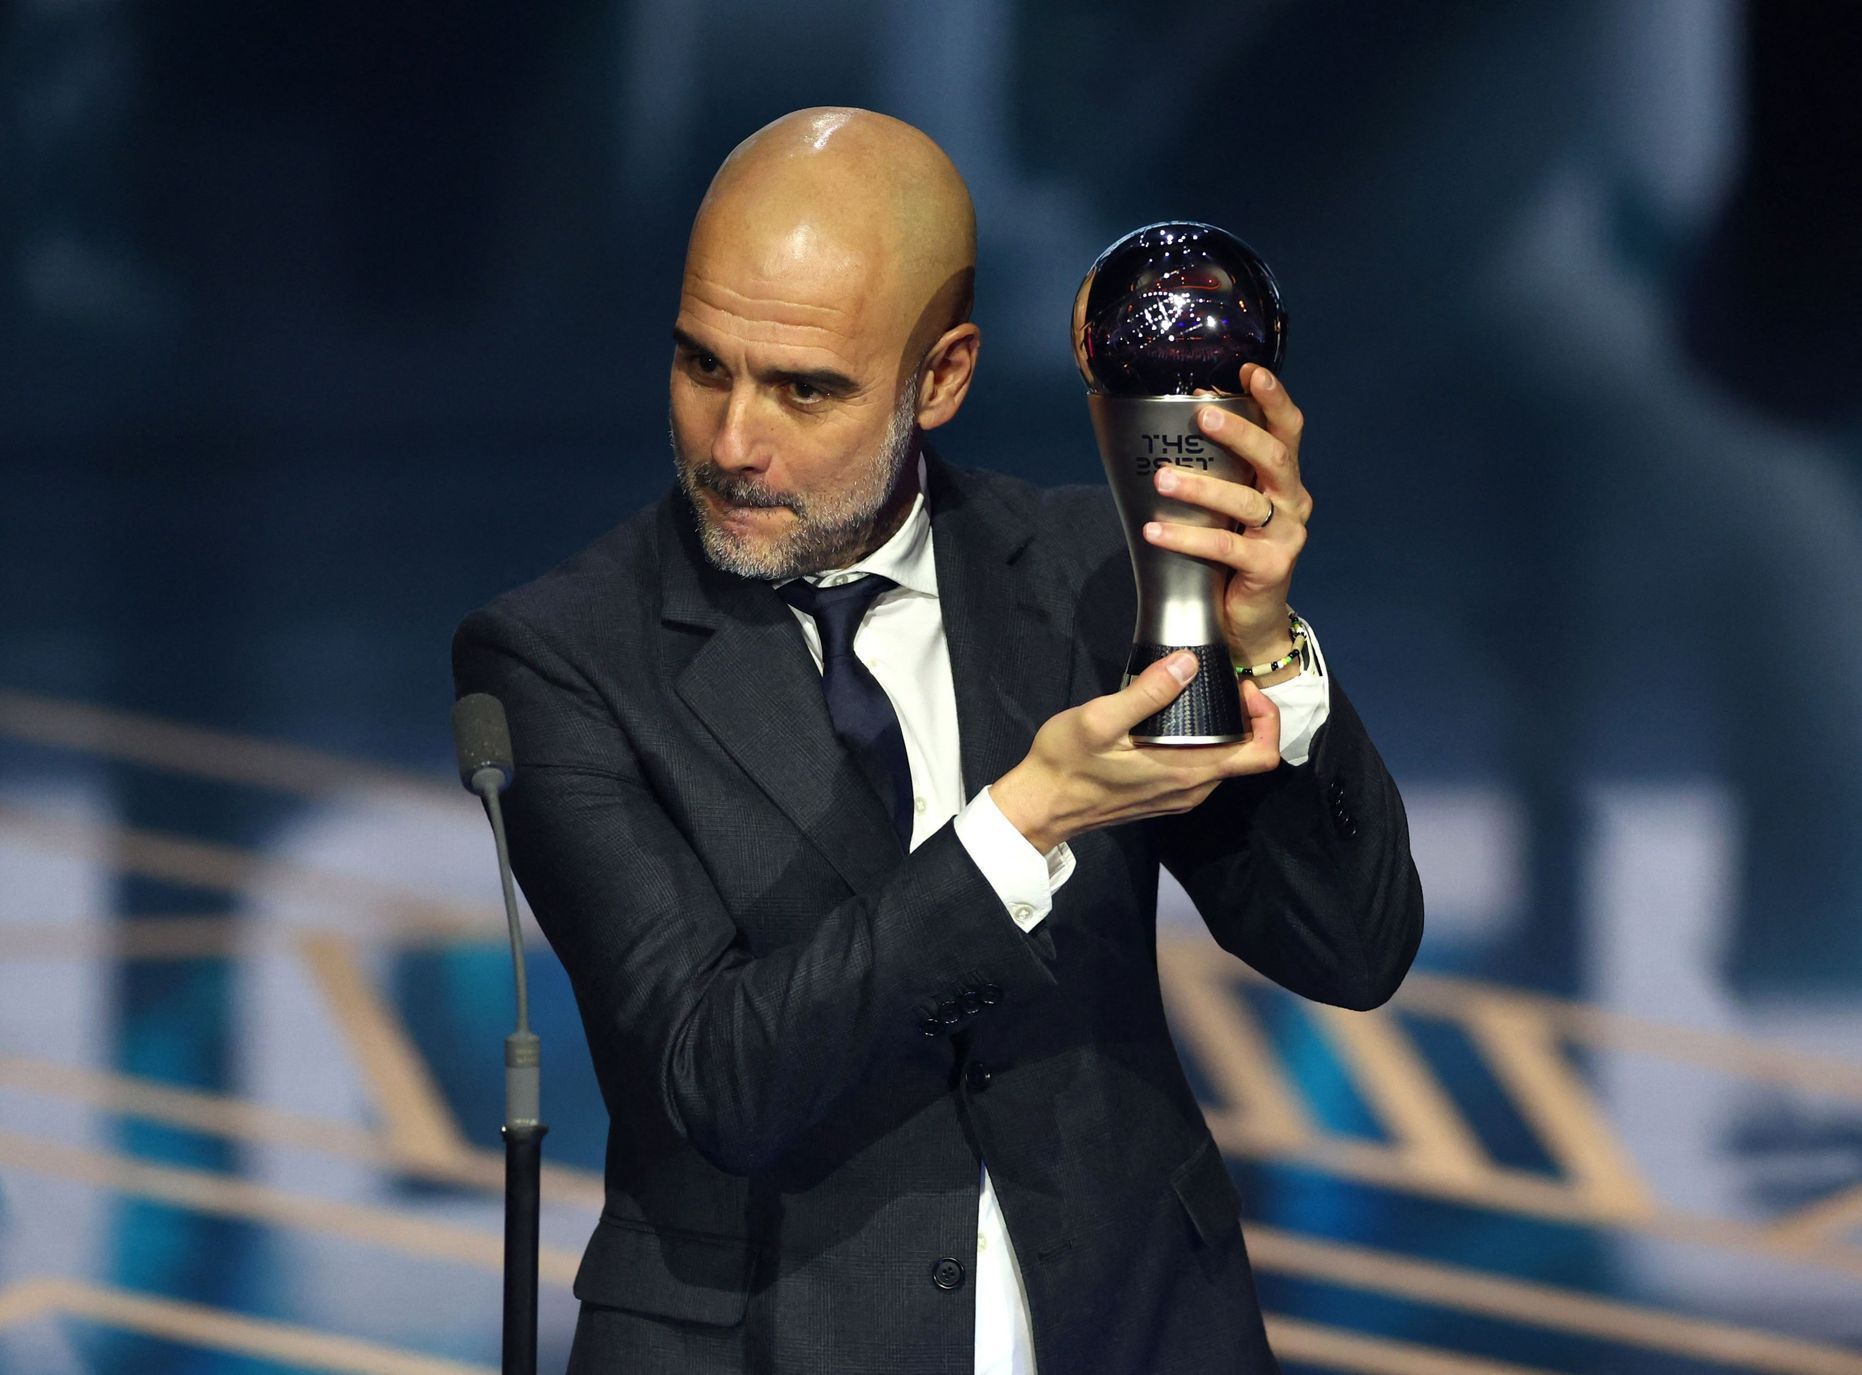 Vyhlášení nejlepších fotbalistů světa v anketě FIFA: Pep Guardiola (Manchester City)